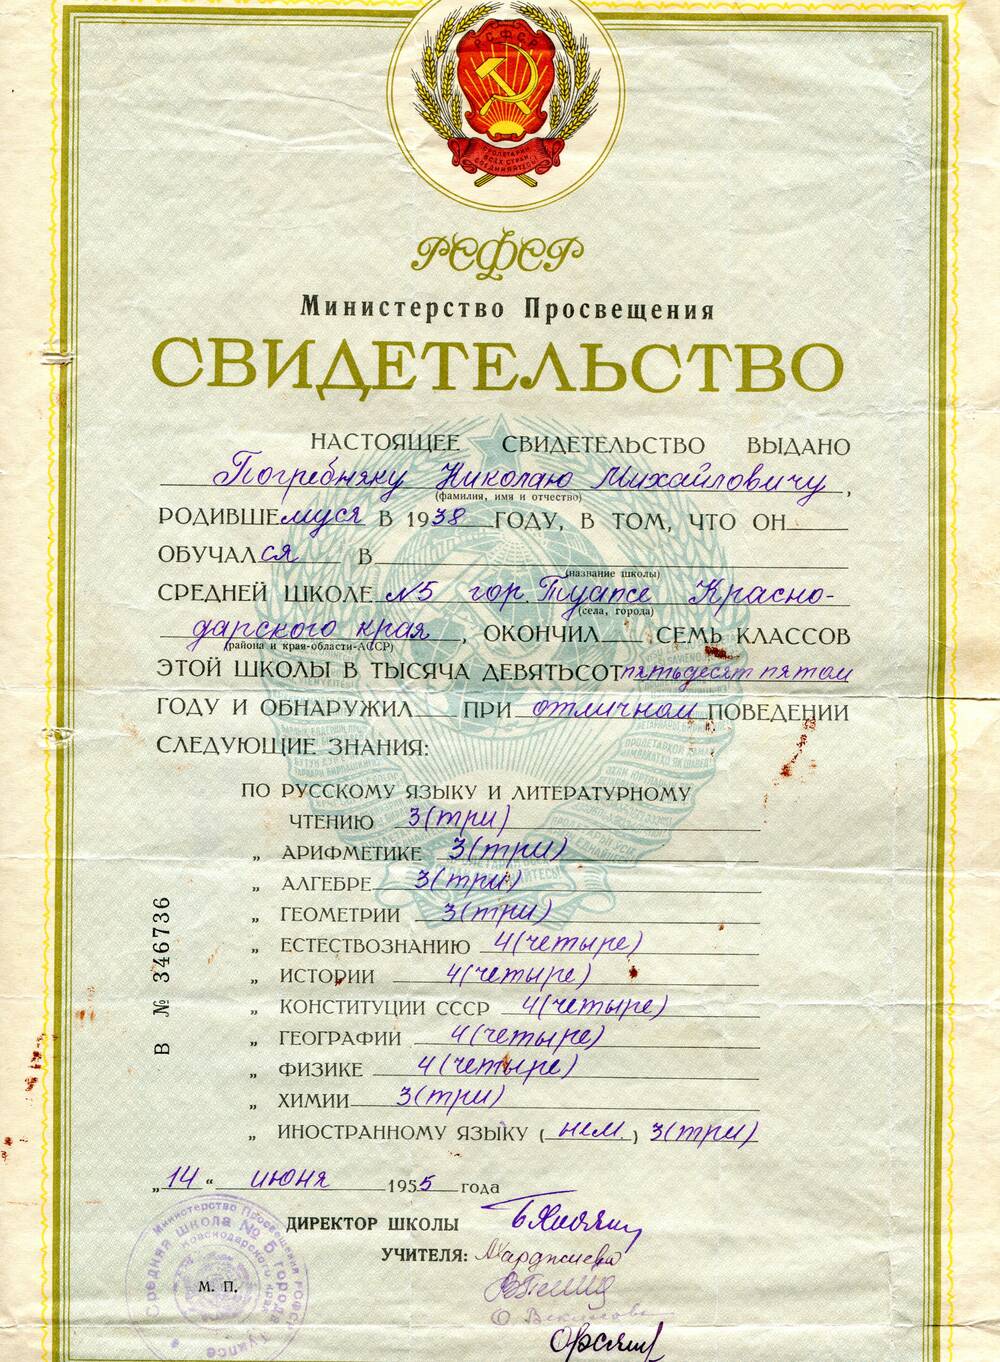 Свидетельство   В № 346736 выдано Погребняку Николаю Михайловичу, родившемуся в  1938 году, об окончании семи классов средней школы № 5 г. Туапсе Краснодарского края.